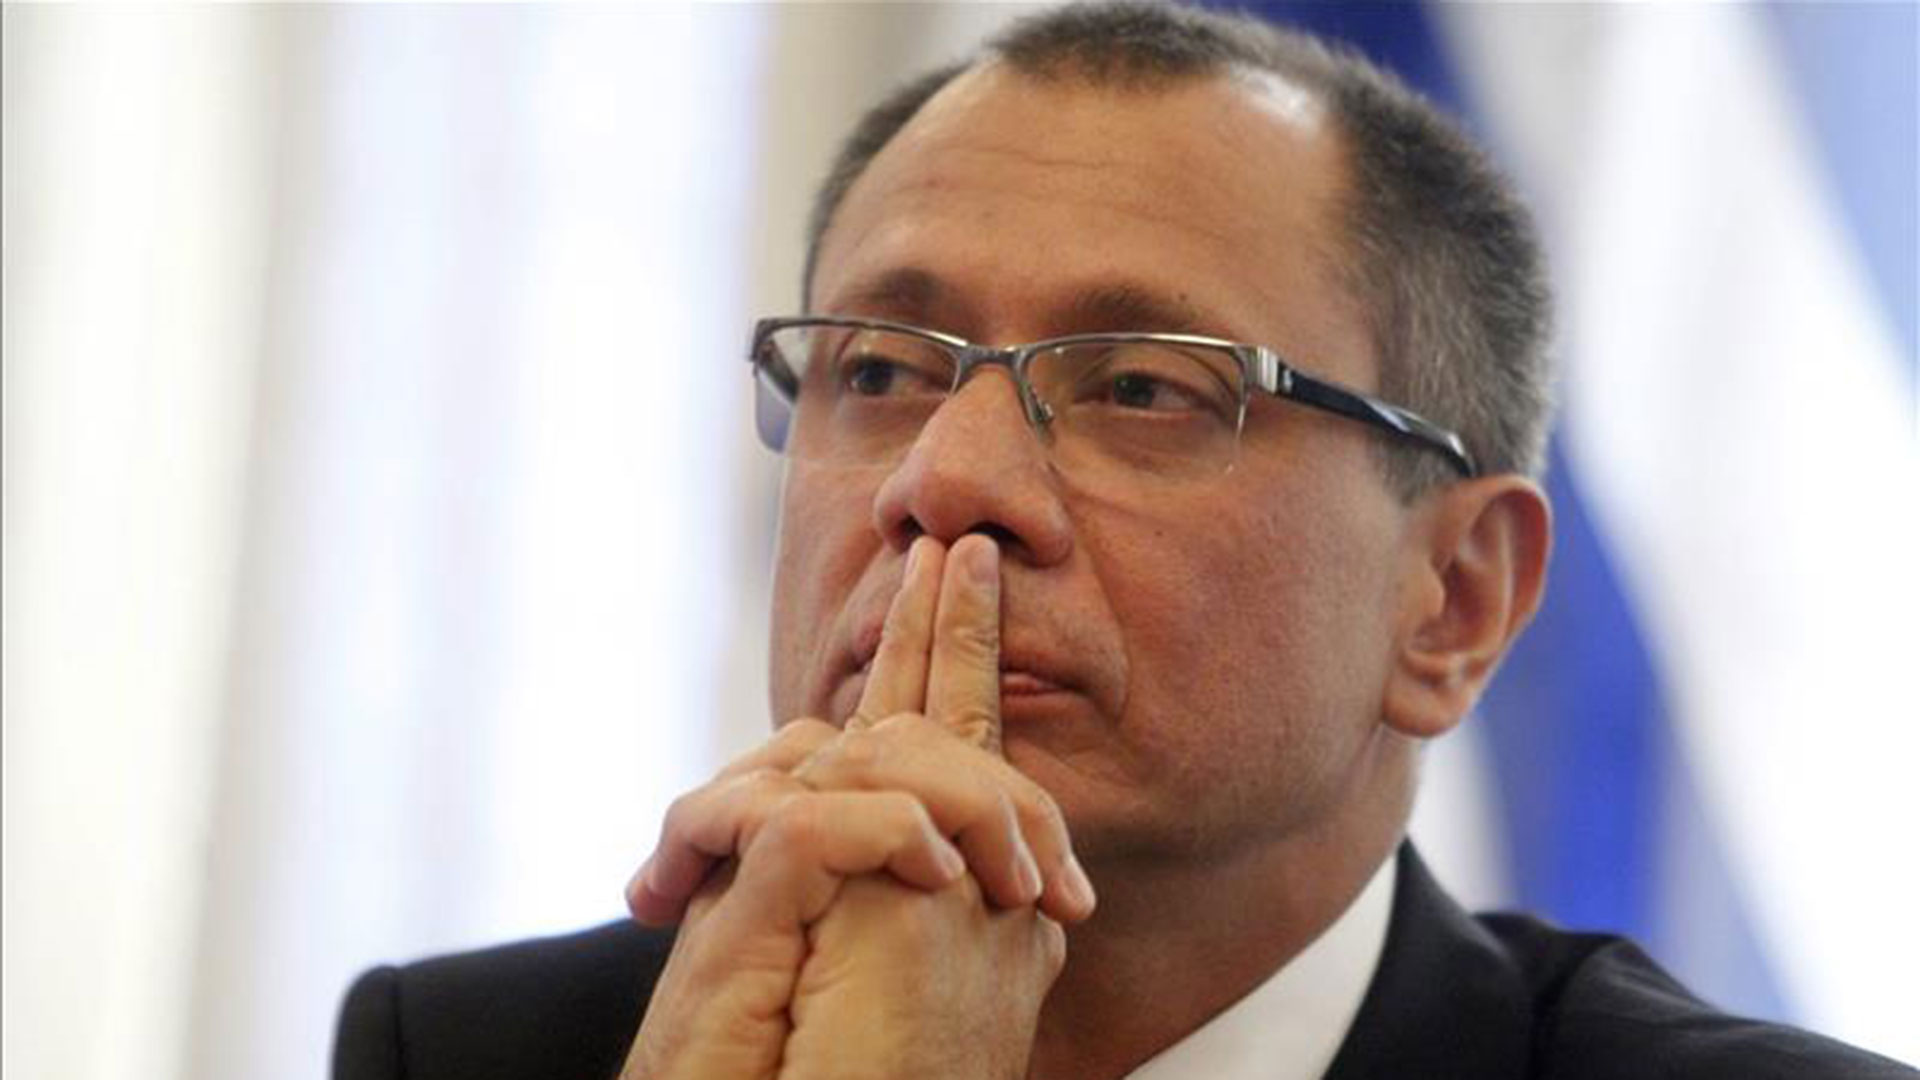 El ex vicepresidente de Ecuador Jorge Glas no dejaría la prisión, según informó el gobierno de Guillermo Lasso.